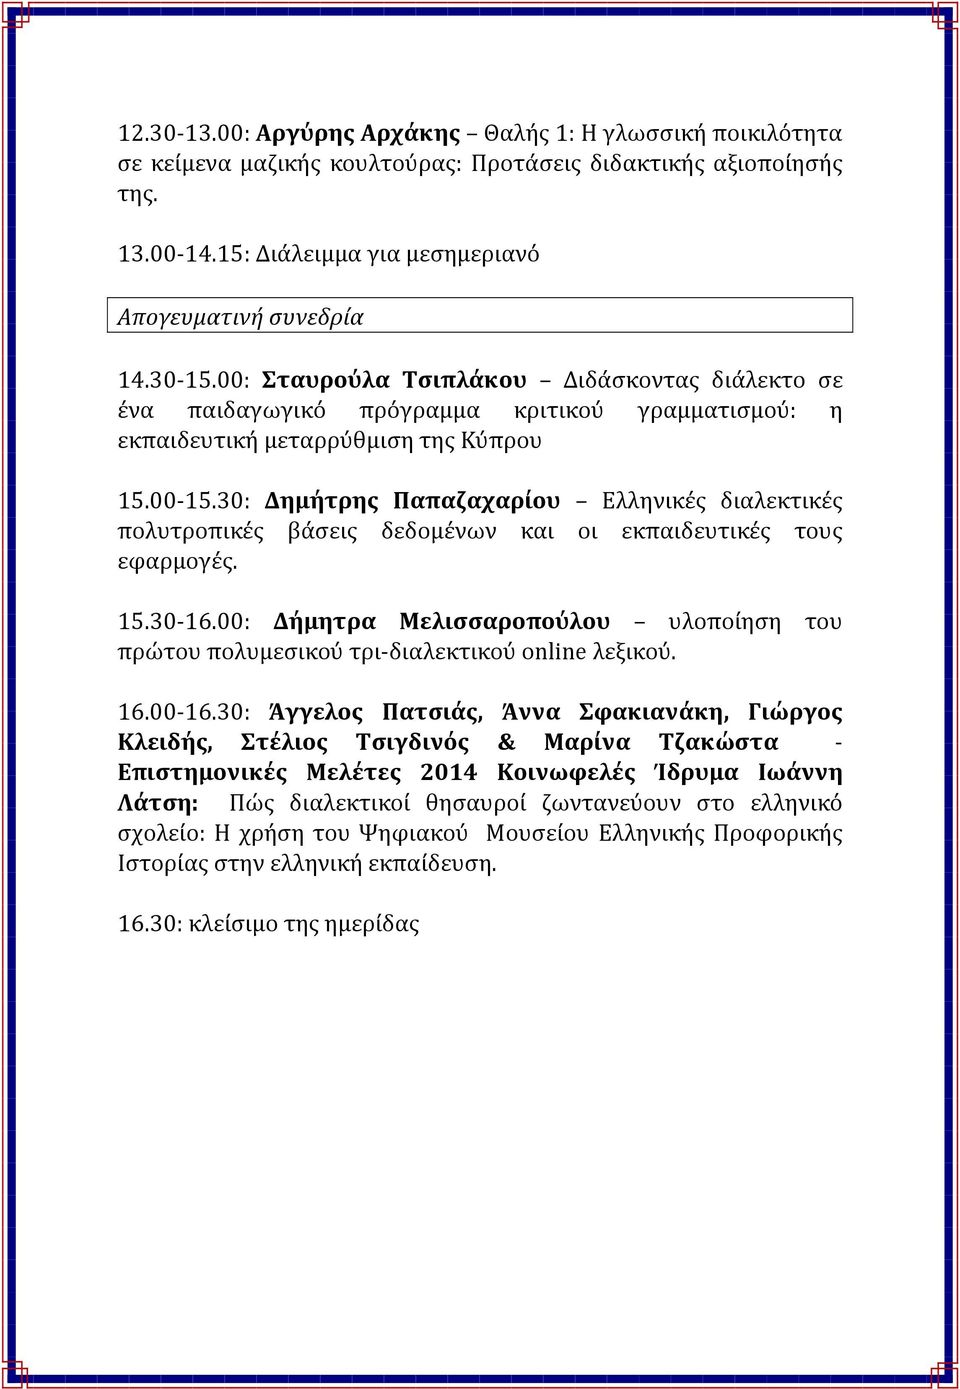 30: Δημήτρης Παπαζαχαρίου Ελληνικές διαλεκτικές πολυτροπικές βάσεις δεδομένων και οι εκπαιδευτικές τους εφαρμογές. 15.30 16.